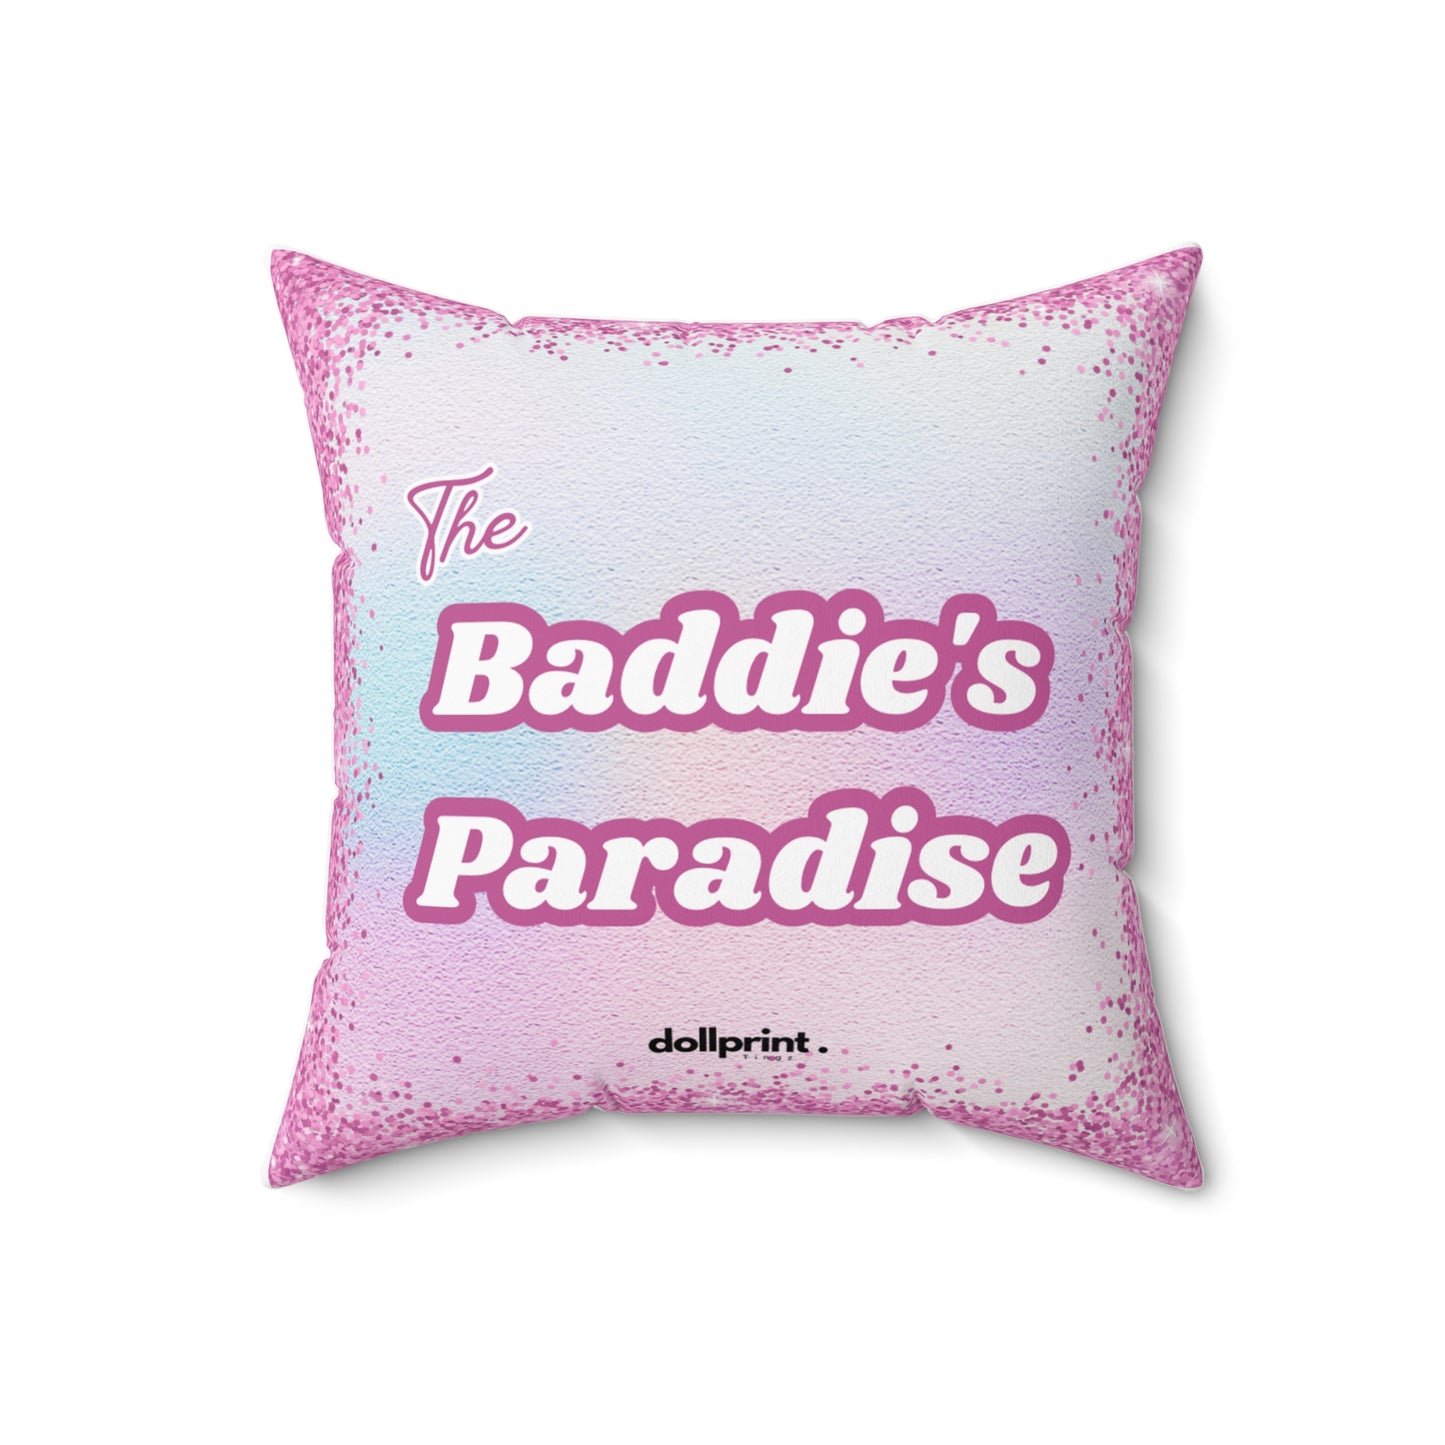 Baddies Paradise Spun Polyester Square Pillow